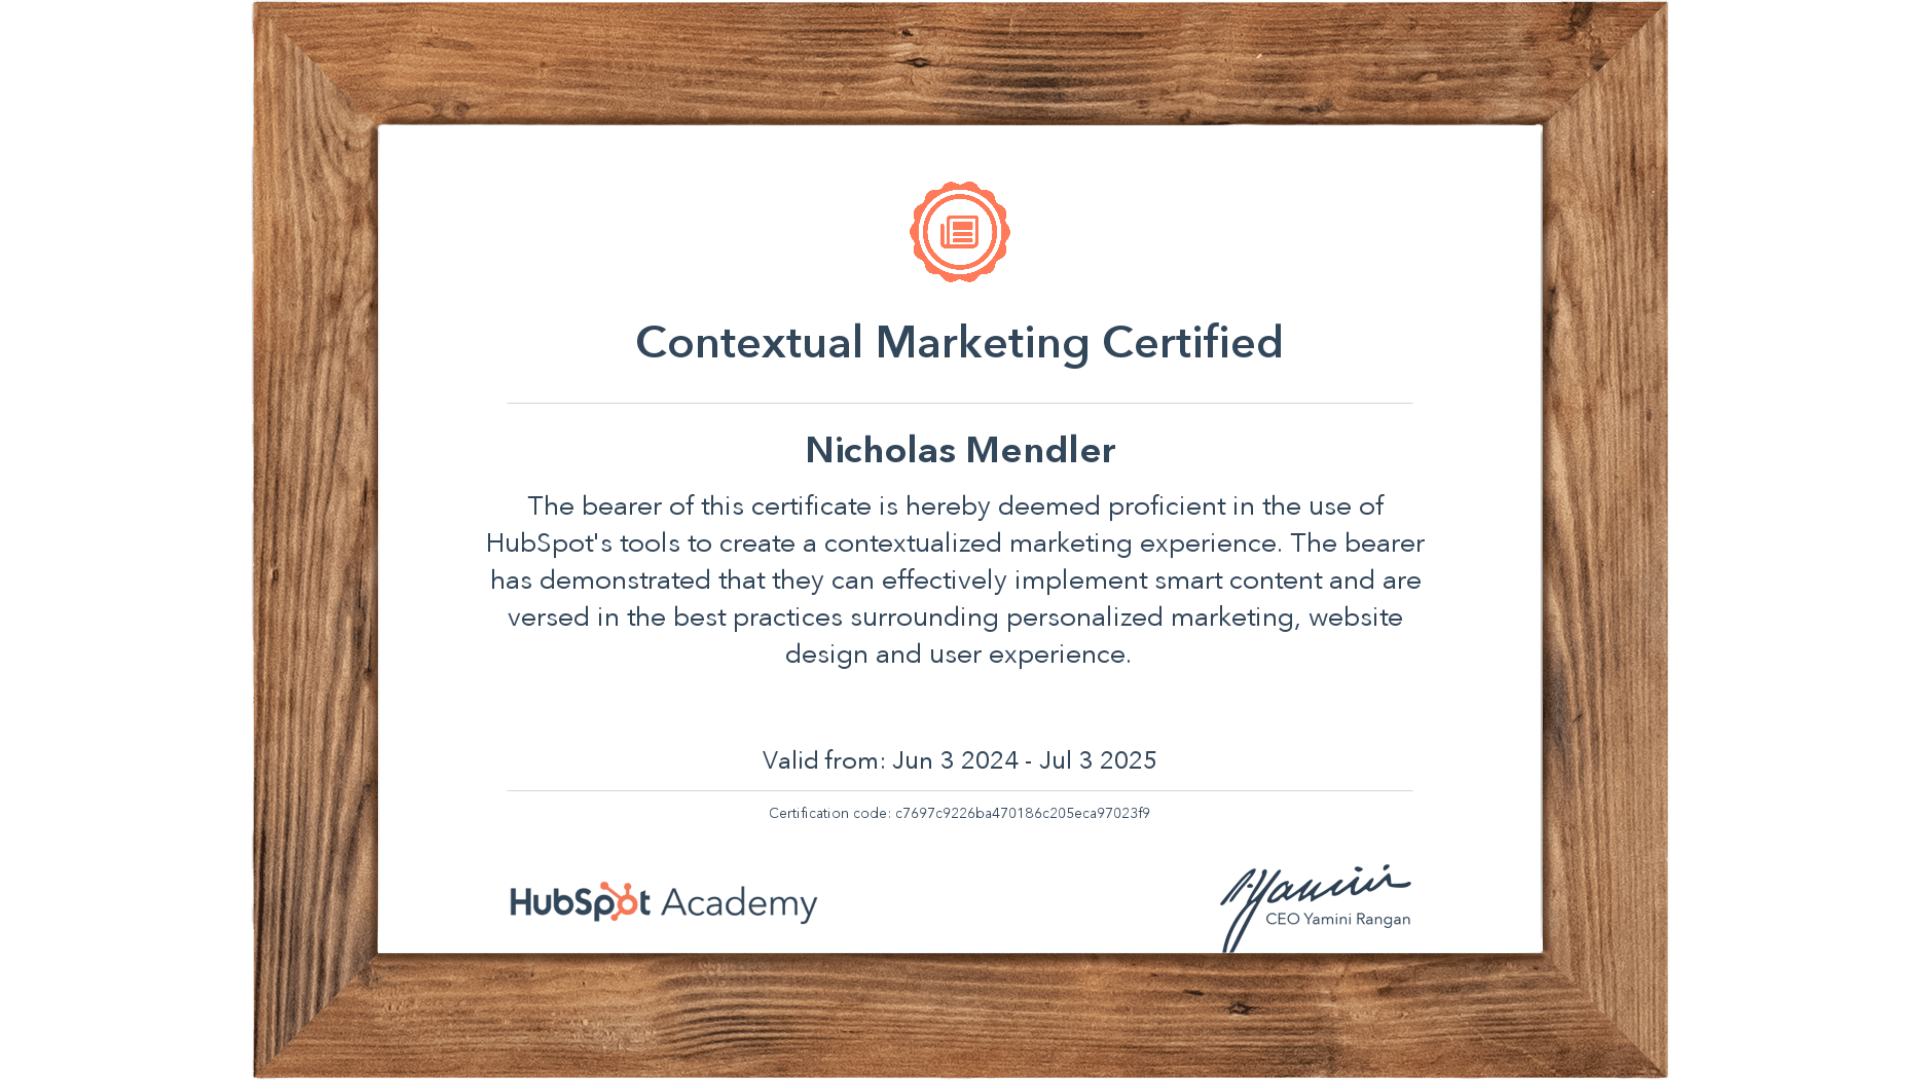 HubSpot Academy - Contextual Marketing Certified